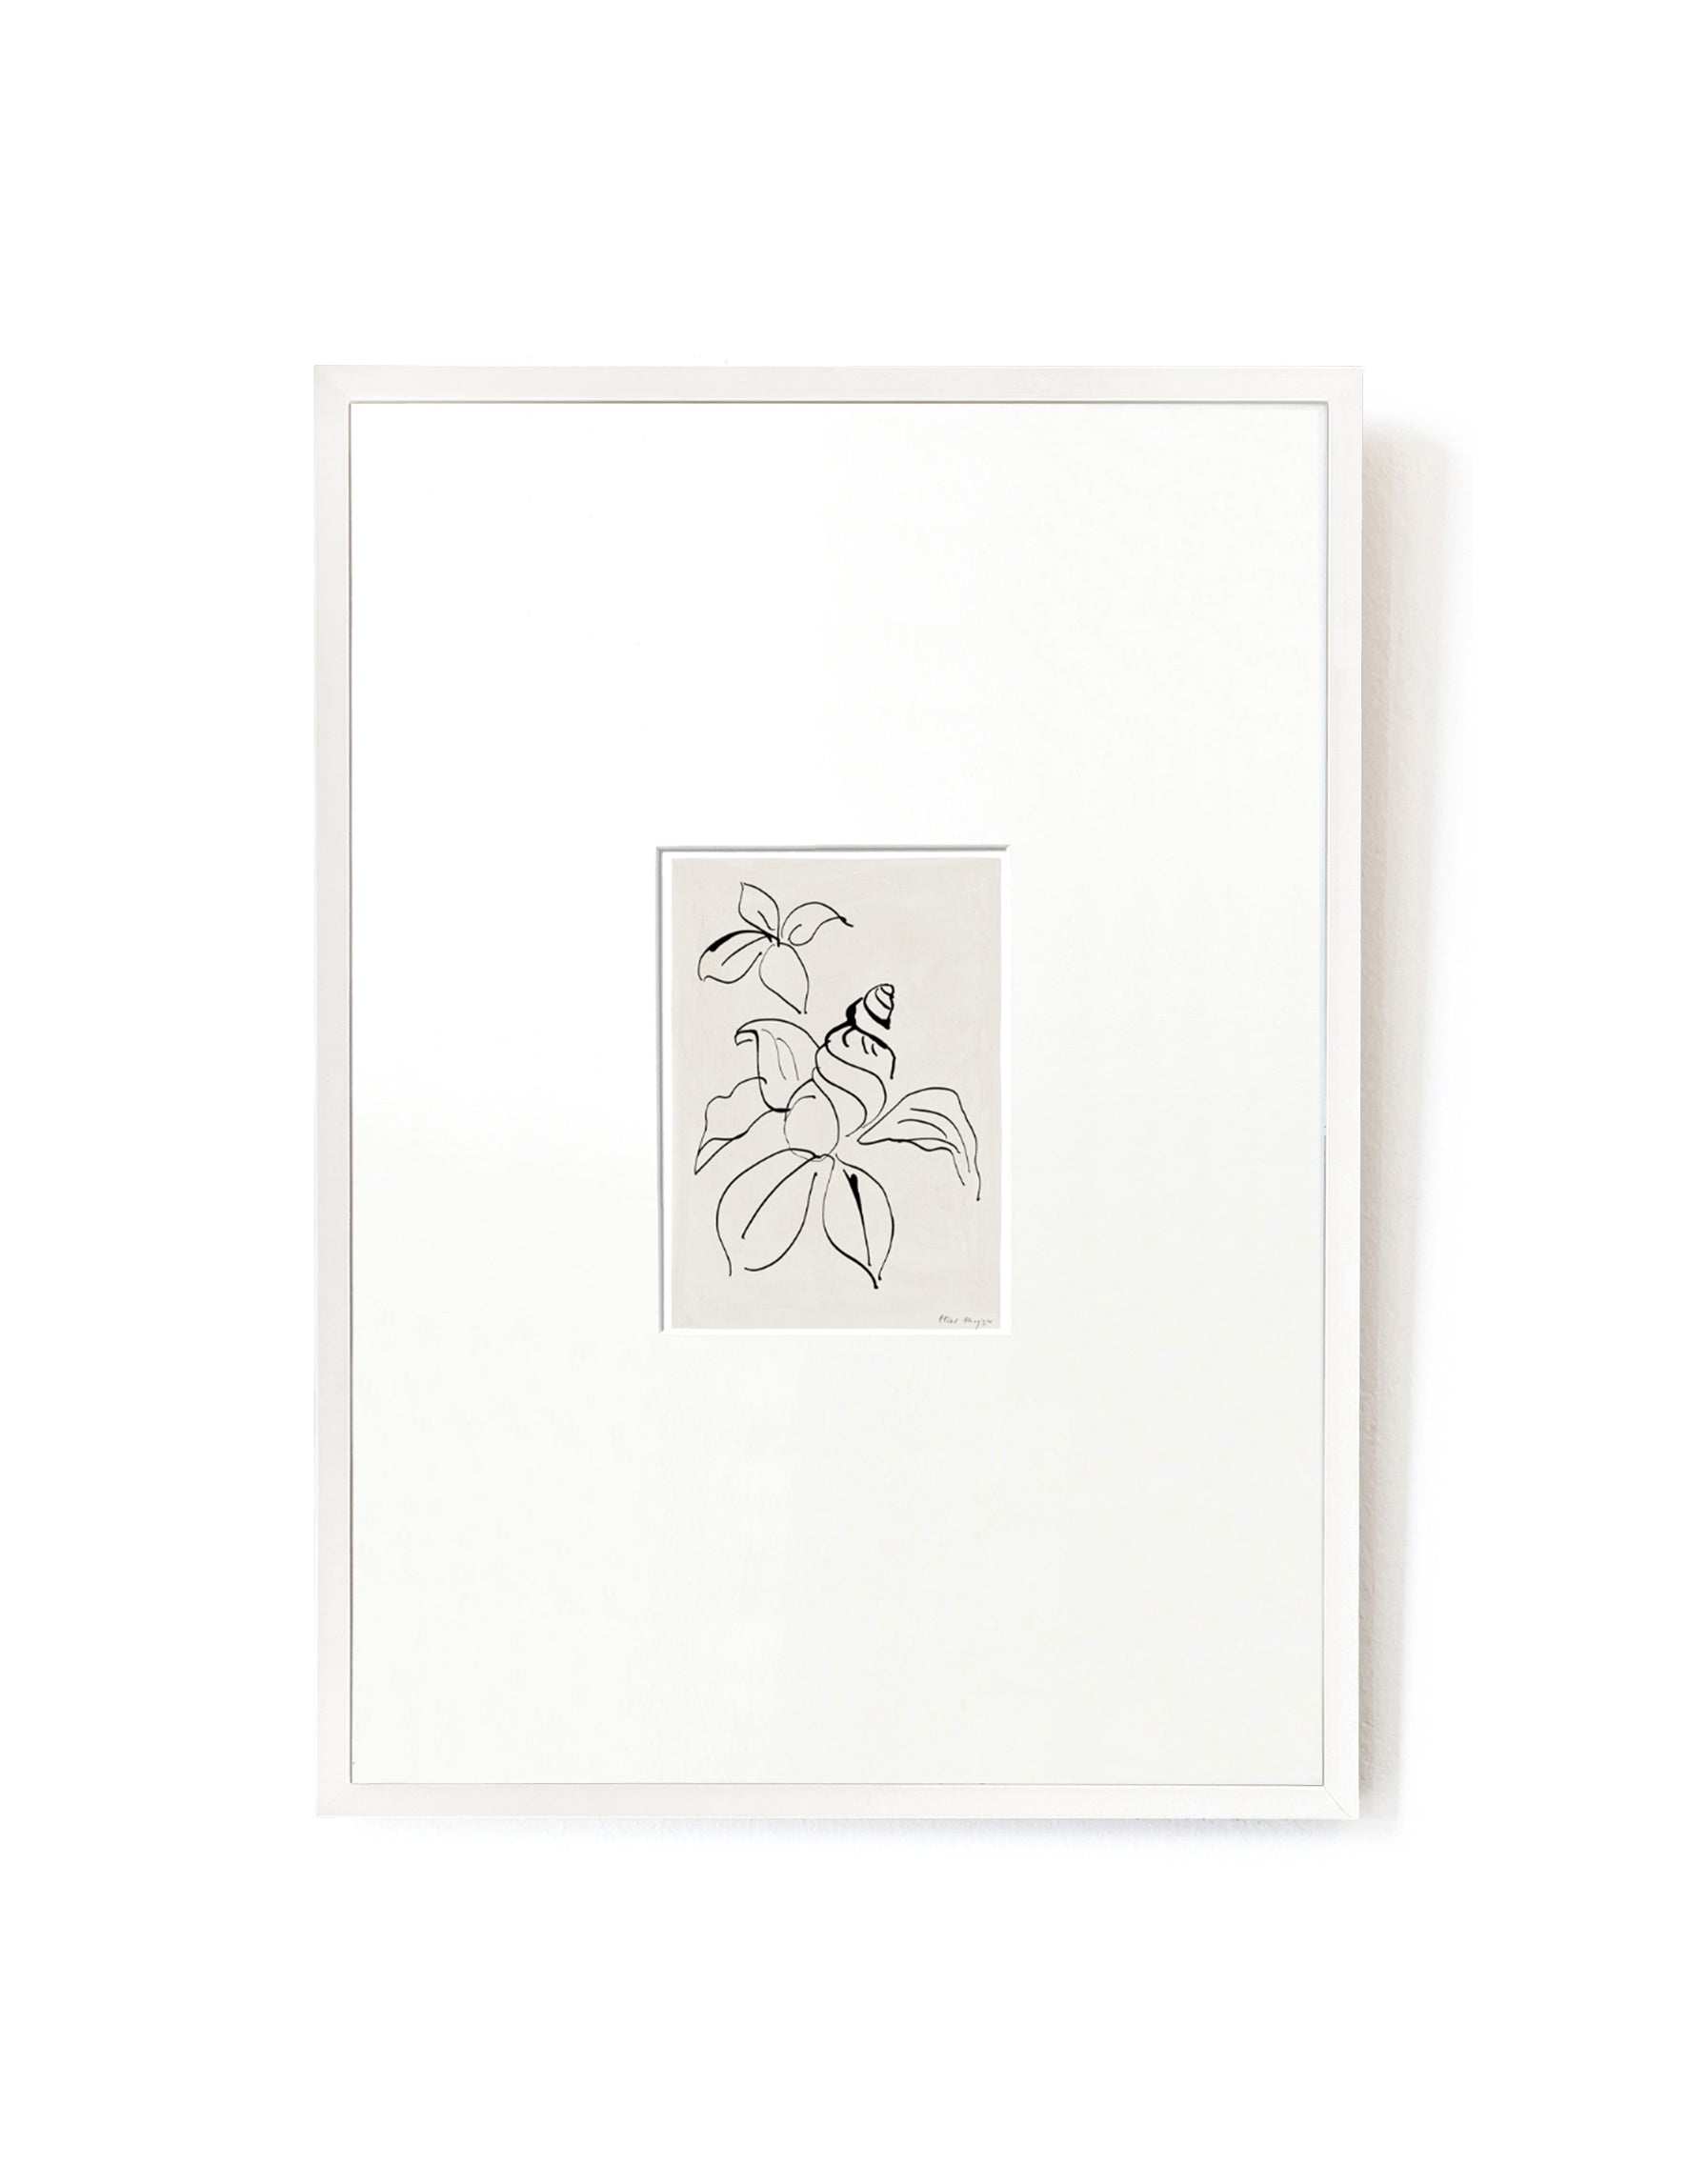 Shell Flower card artwork framed